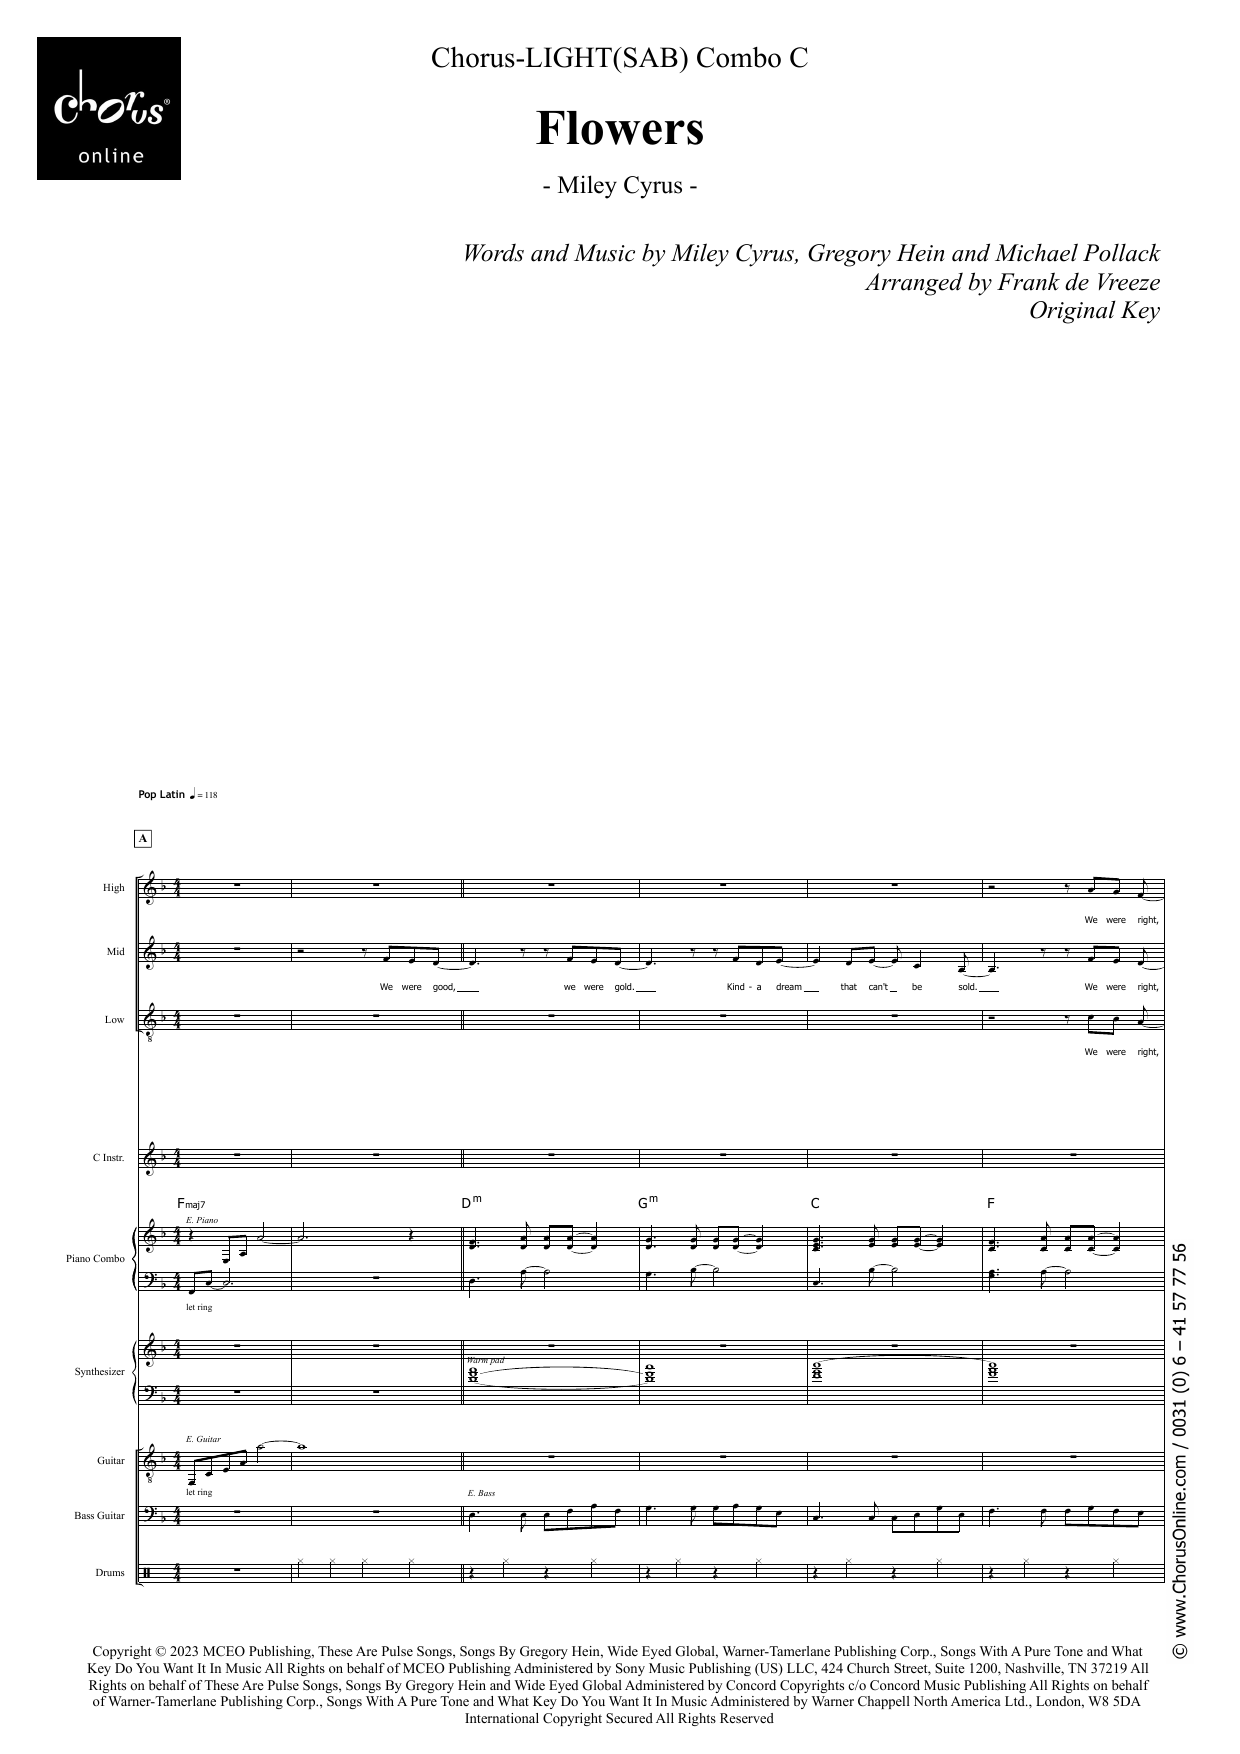 Miley Cyrus Flowers (arr. Frank de Vreeze) sheet music notes printable PDF score